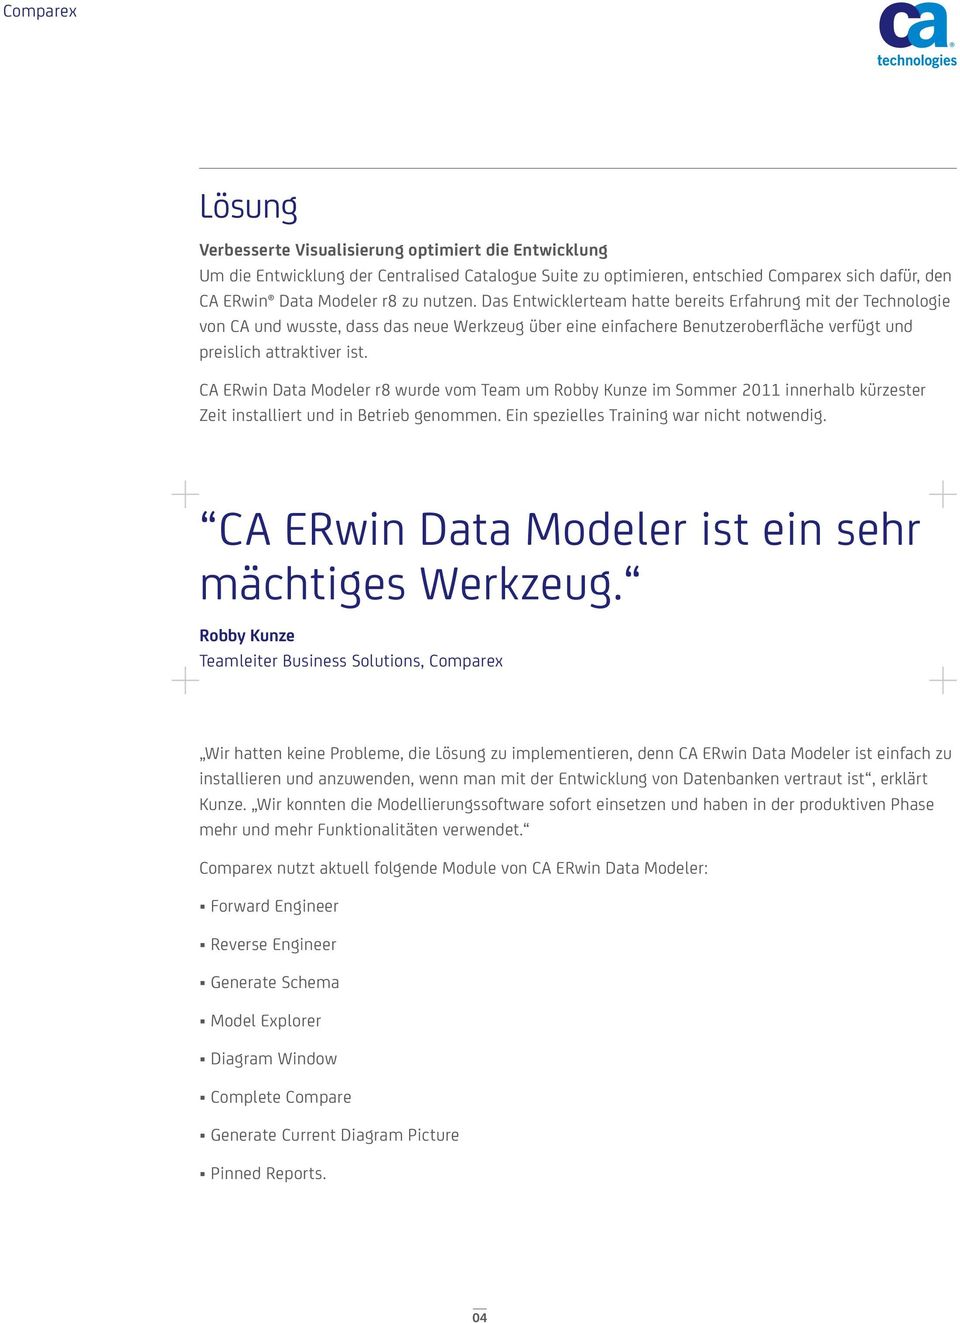 CA ERwin Data Modeler r8 wurde vom Team um Robby Kunze im Sommer 2011 innerhalb kürzester Zeit installiert und in Betrieb genommen. Ein spezielles Training war nicht notwendig.